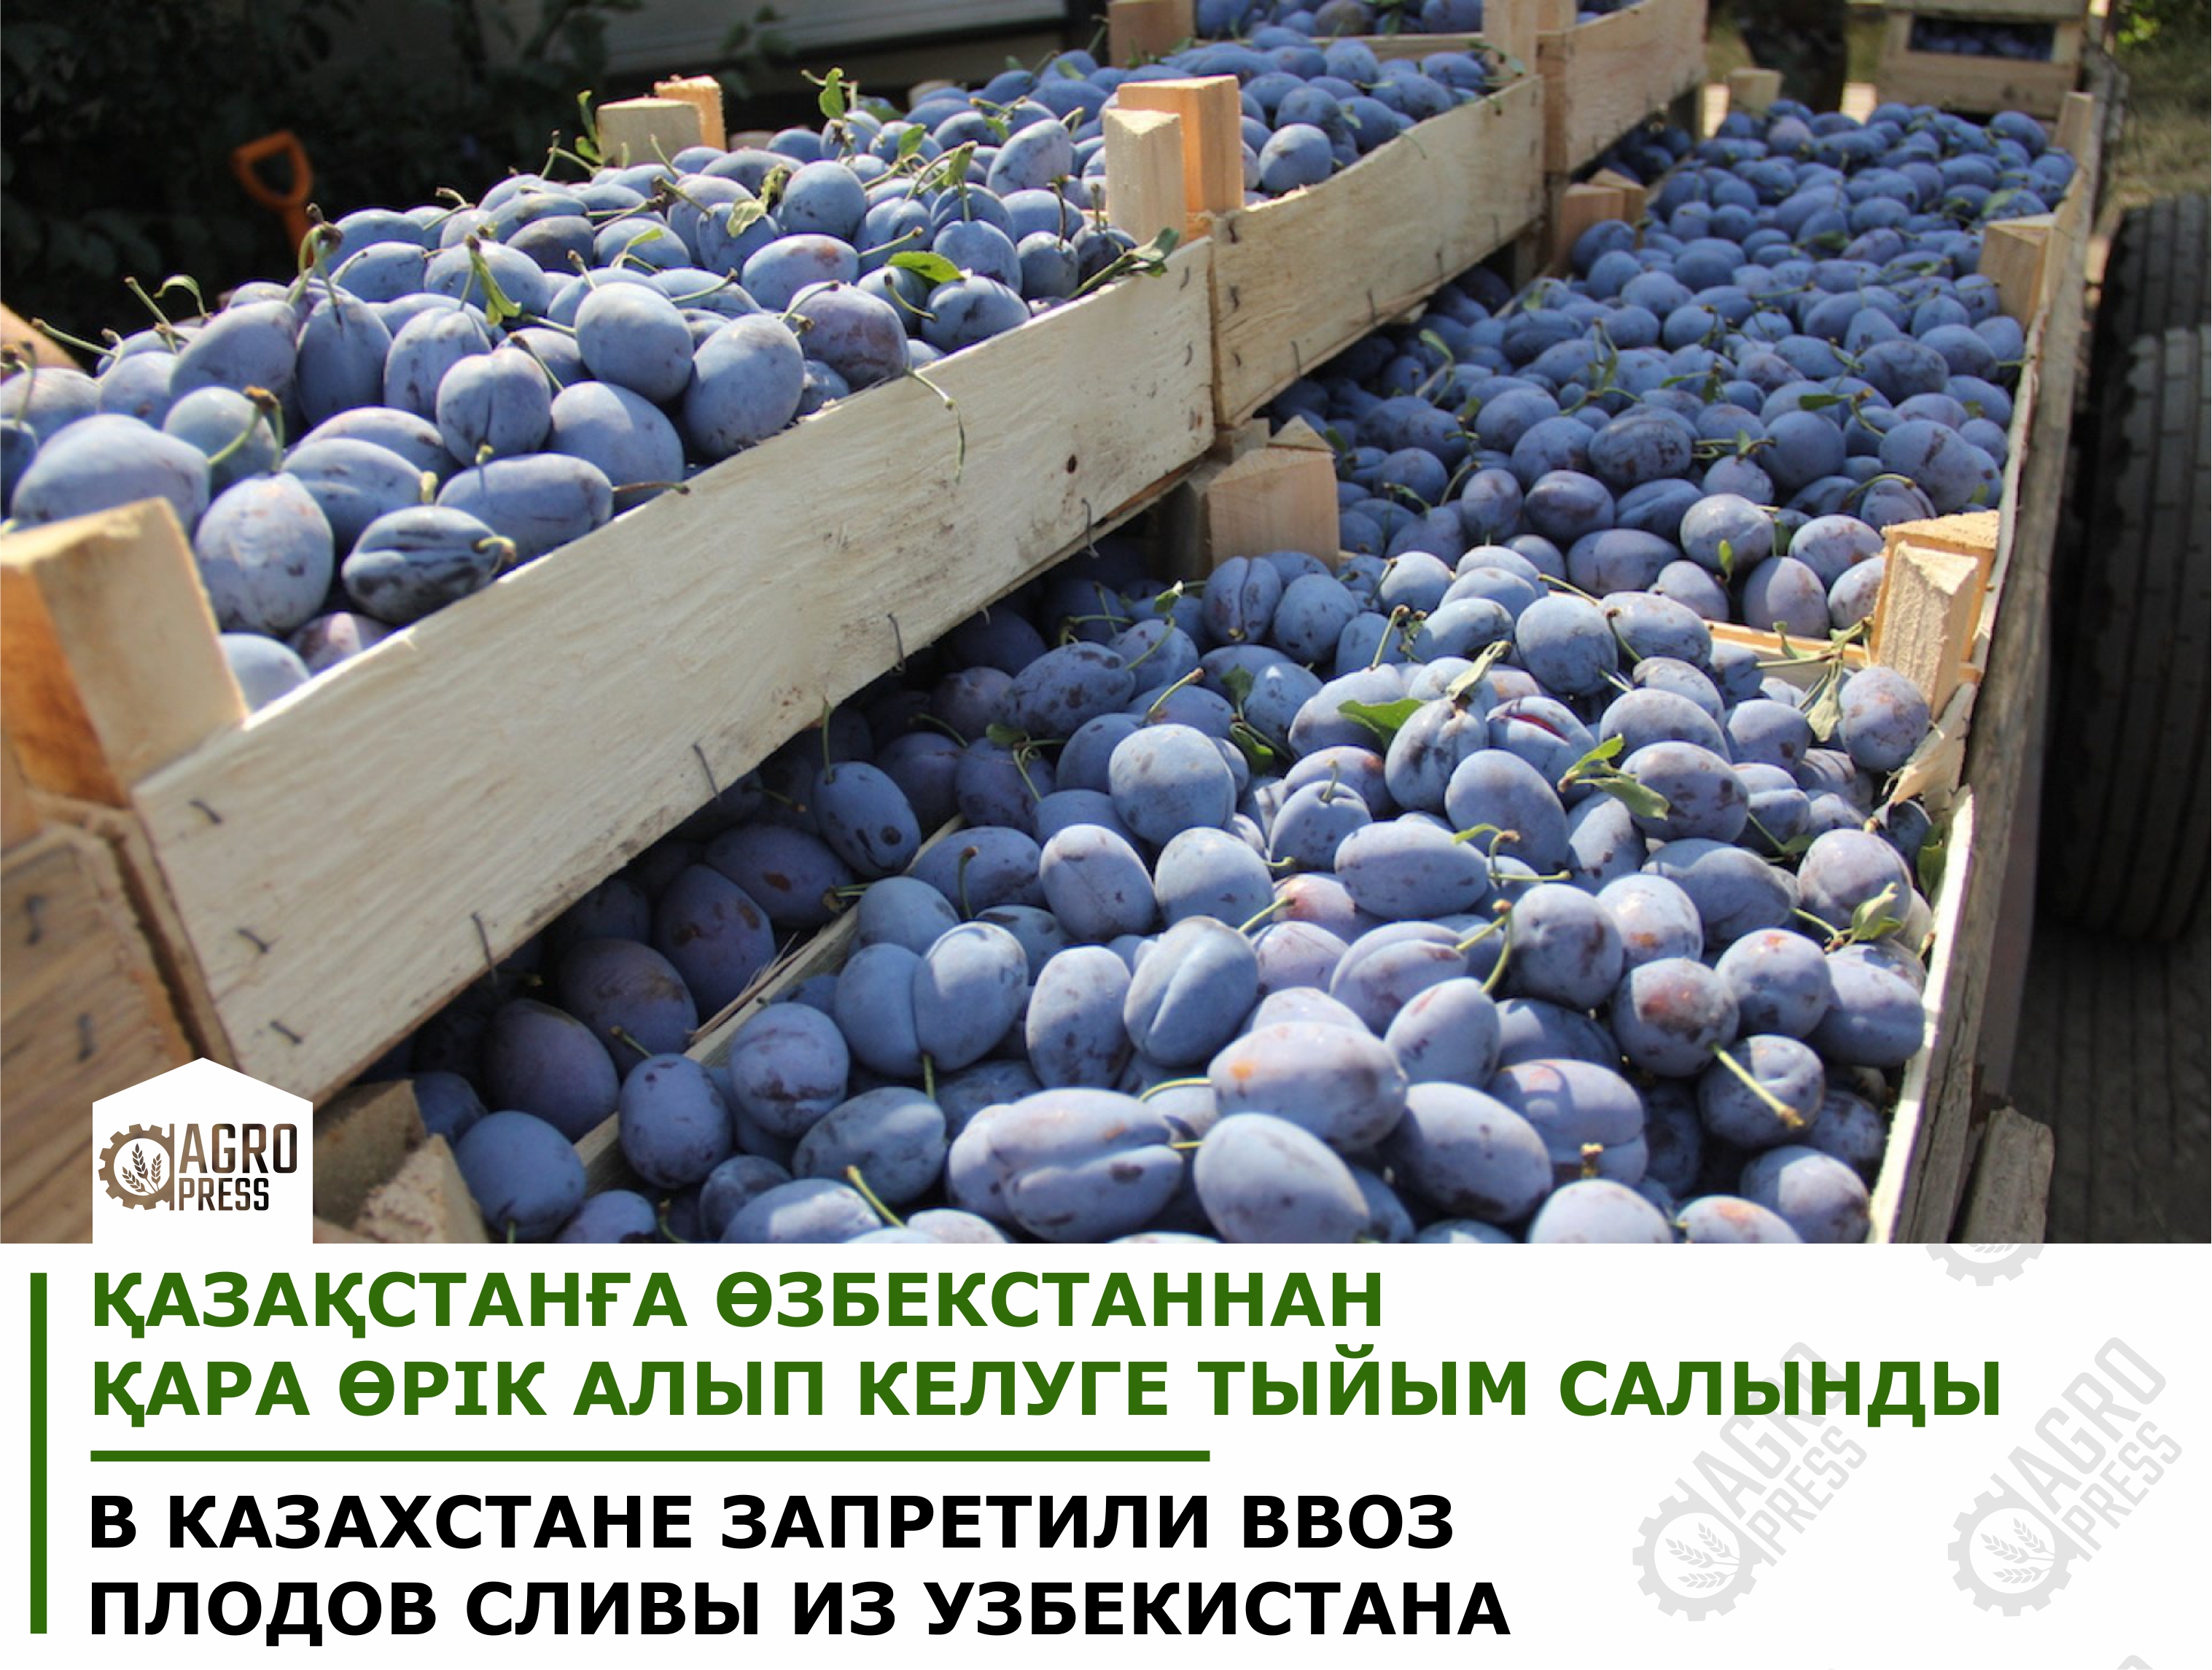 В Казахстане запретили ввоз плодов сливы из Узбекистана